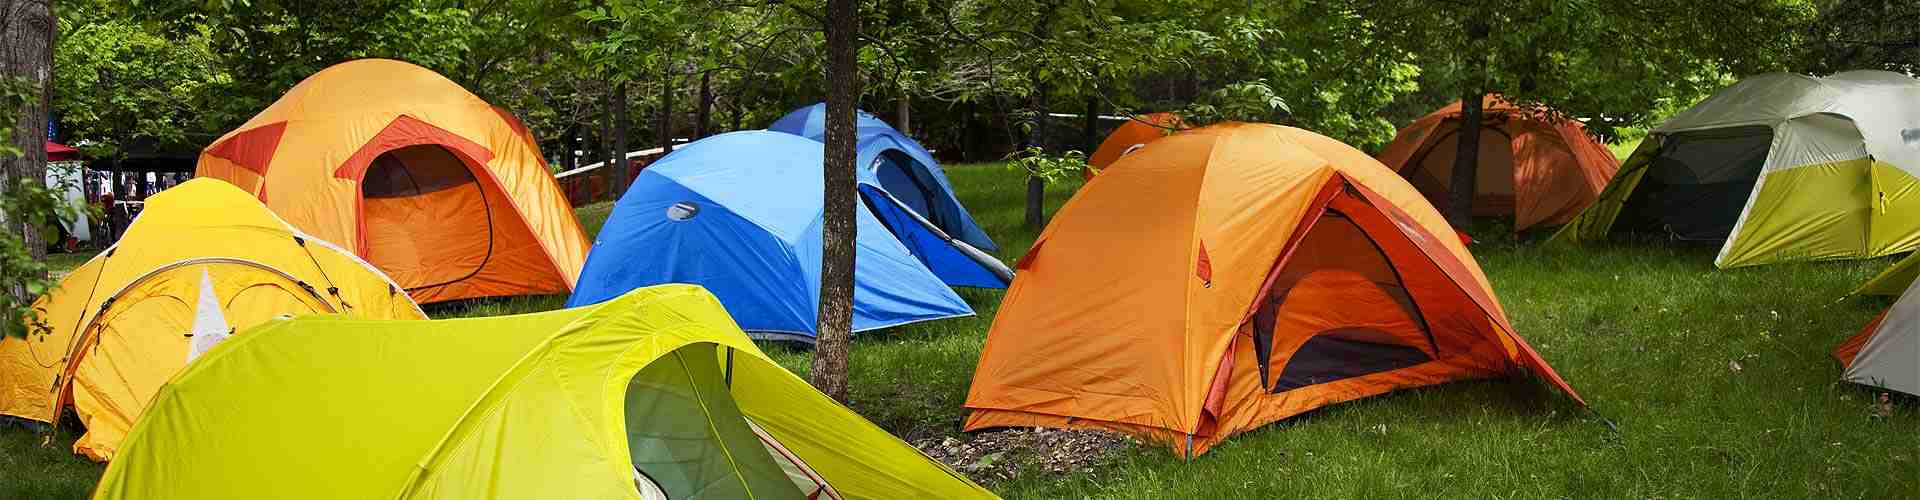 Campings y bungalows en Copons
           
           


          
          
          


